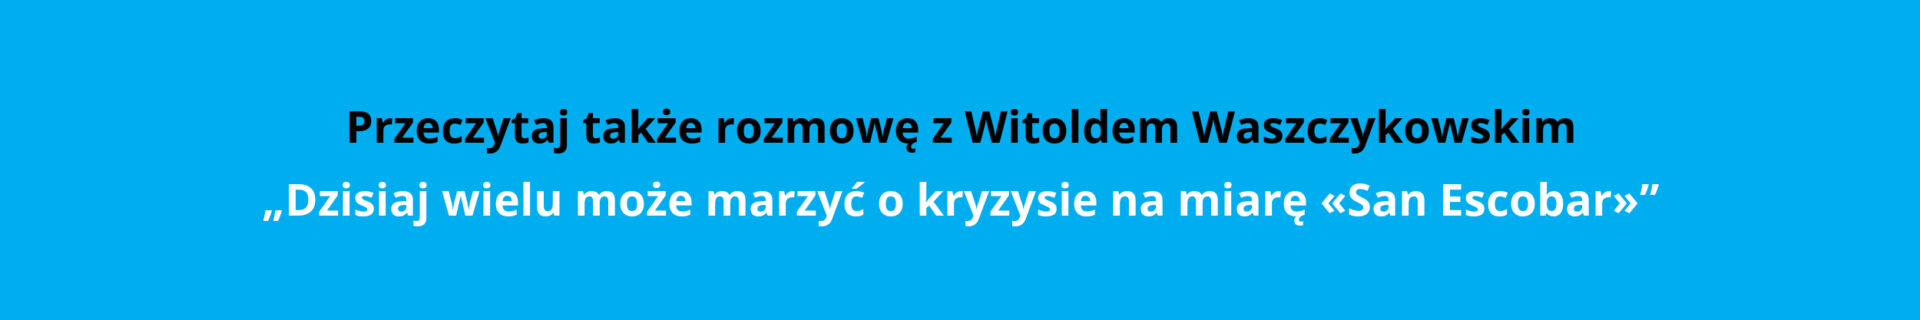 waszczykowski